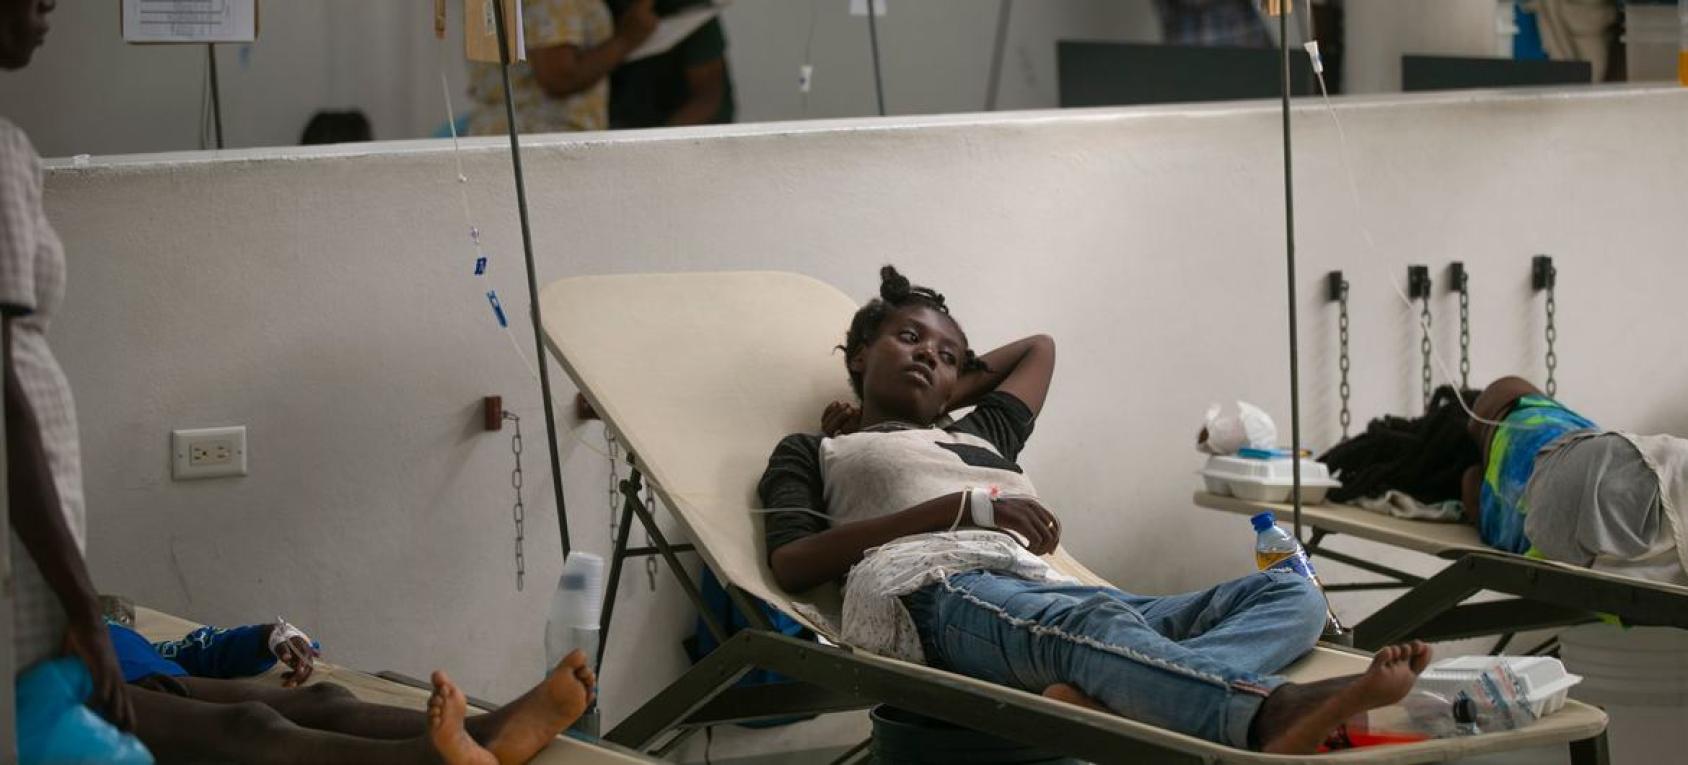 امرأة مصابة بالكوليرا تعالَج في مستشفى في بورت أو برنس بهايتي.